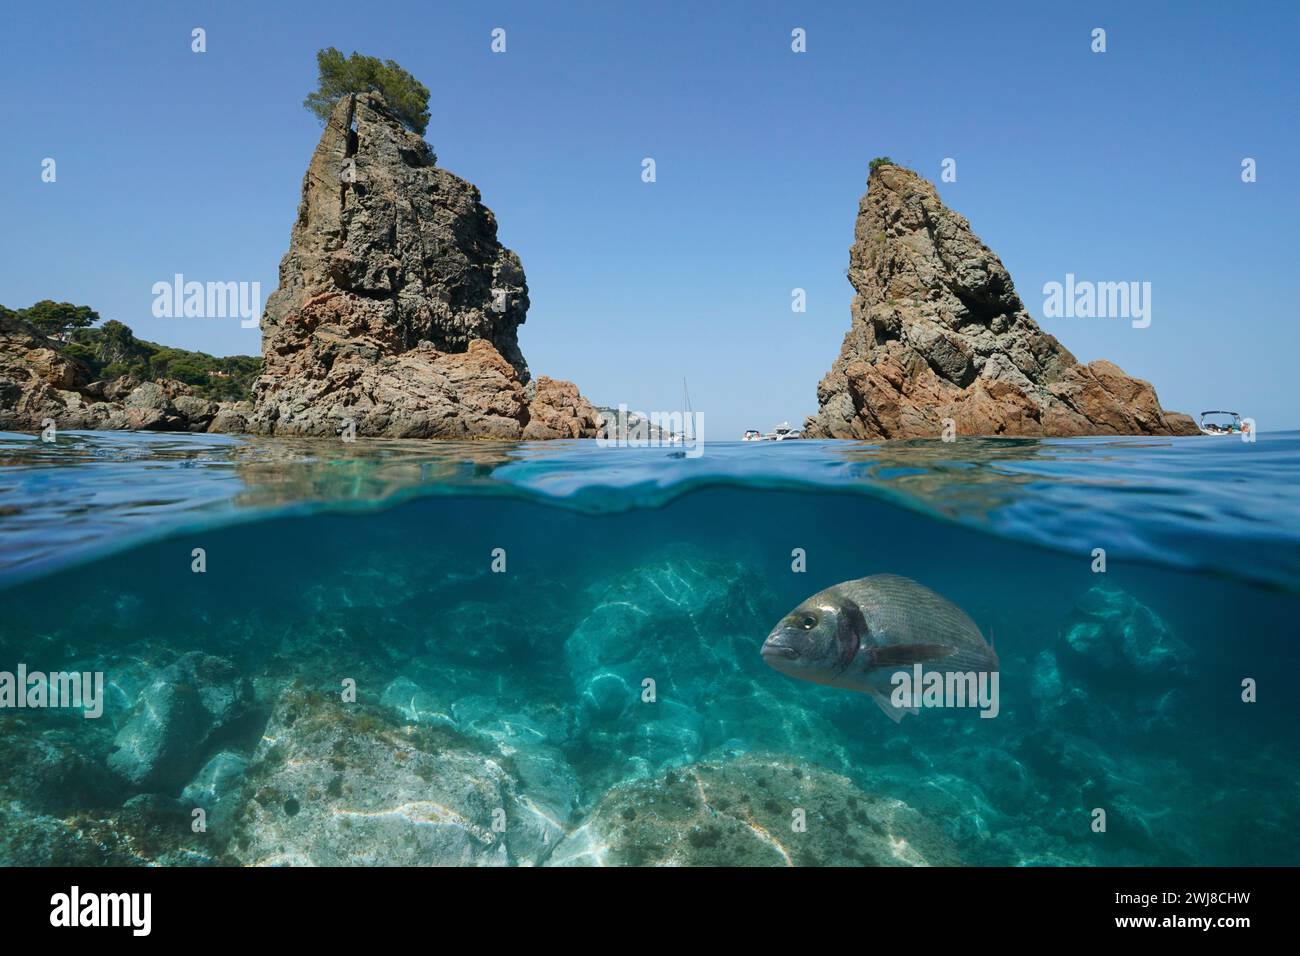 Spagna Costa Brava, isolotti rocciosi costieri nel Mar Mediterraneo con un pesce sott'acqua, vista divisa a metà sulla superficie e sott'acqua, scenario naturale Foto Stock